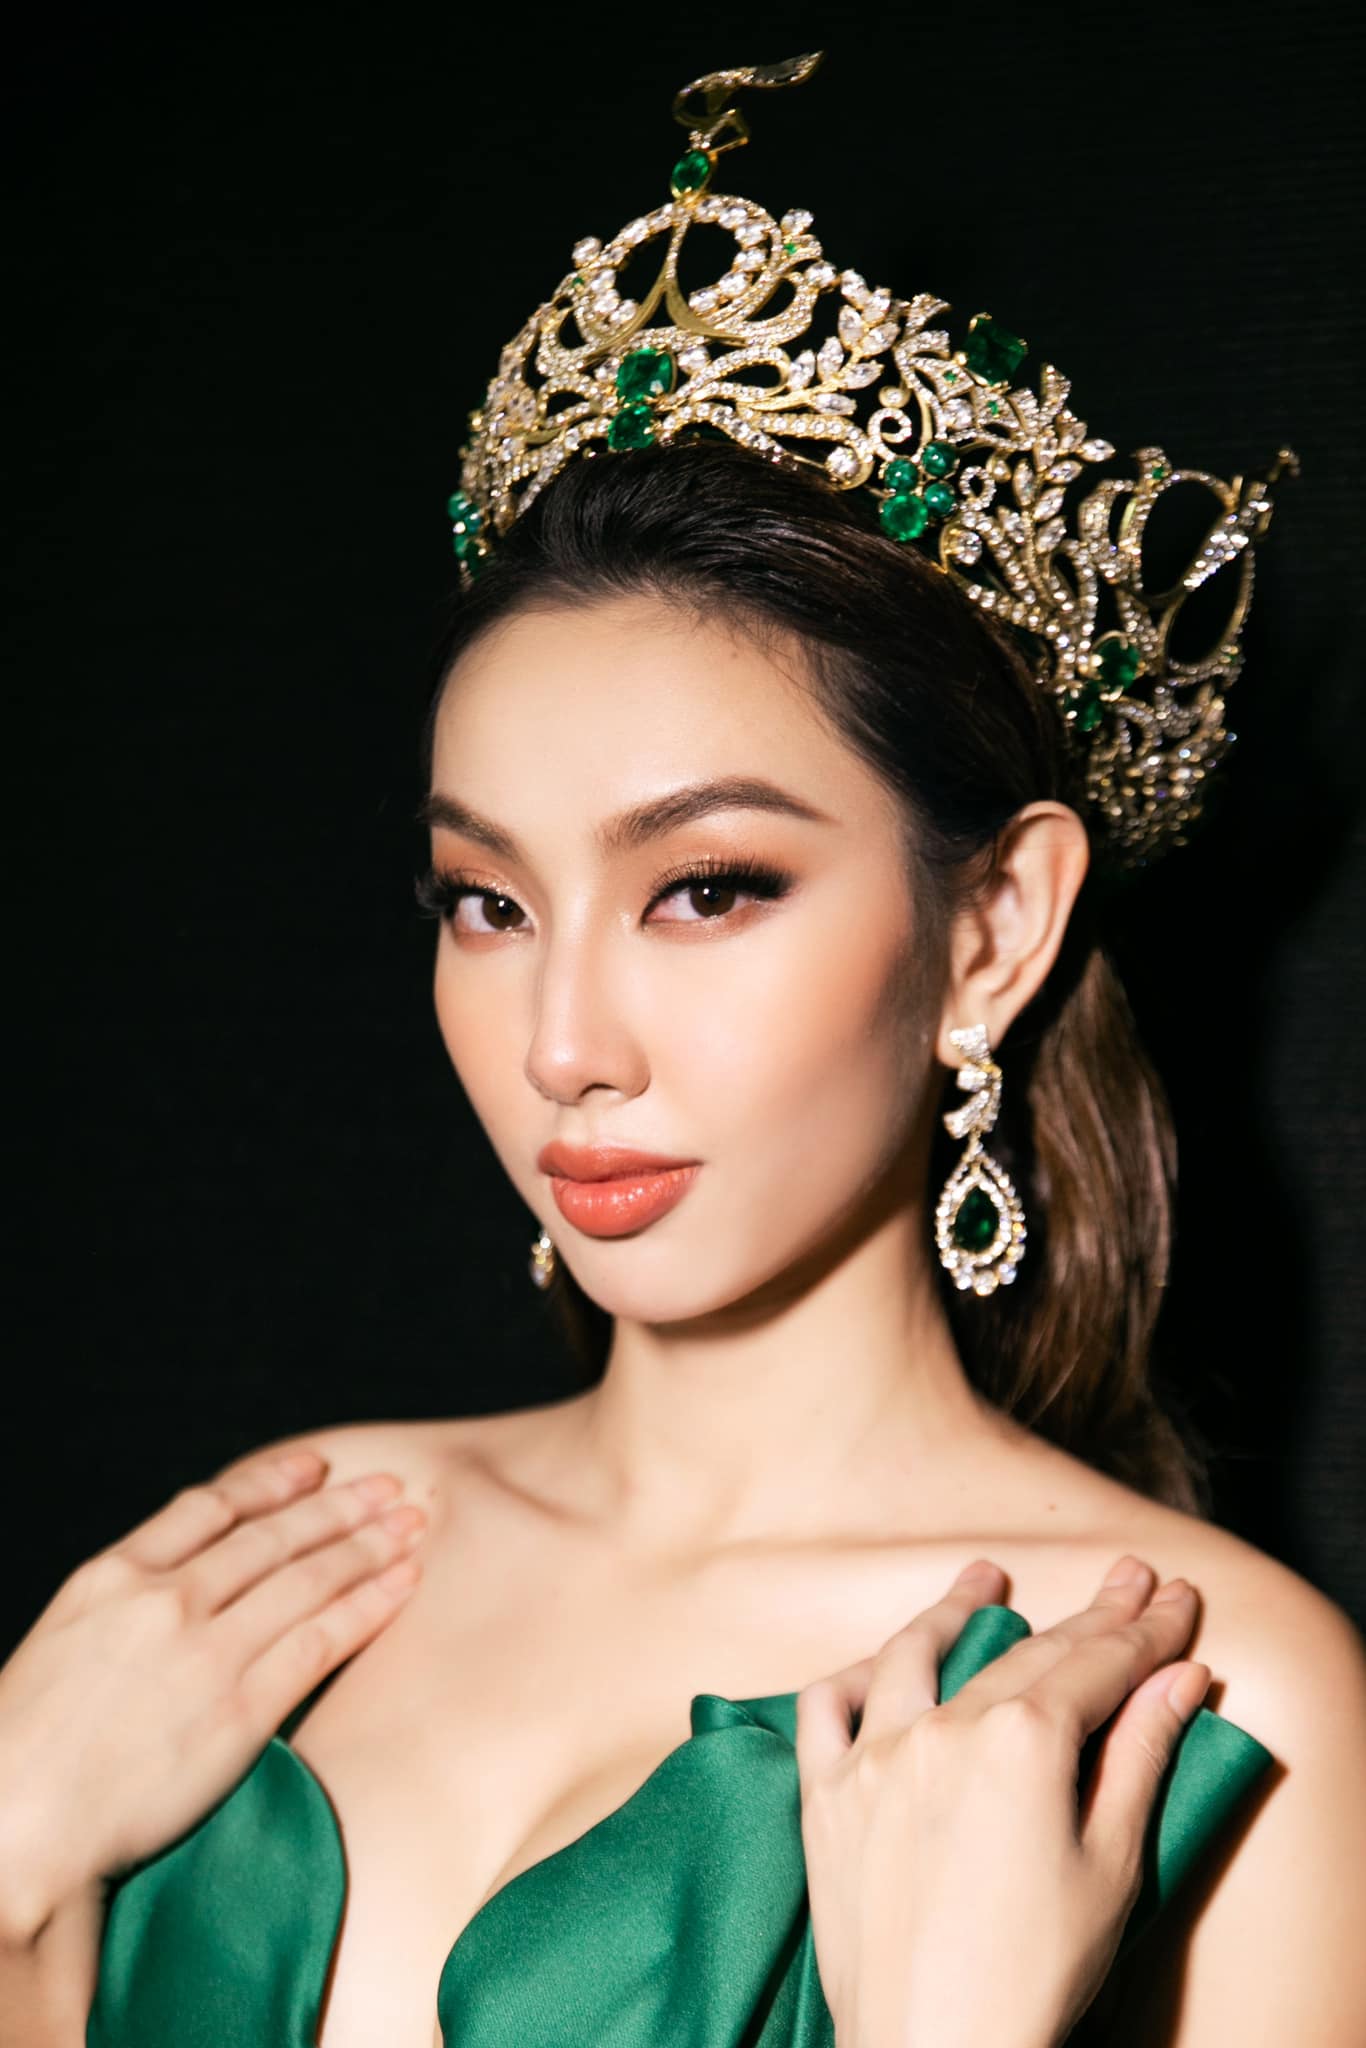 Người đẹp của Việt Nam đang đảm nhận vai trò đại sứ vì hòa bình sau khi đăng quang Miss Grand International 2021